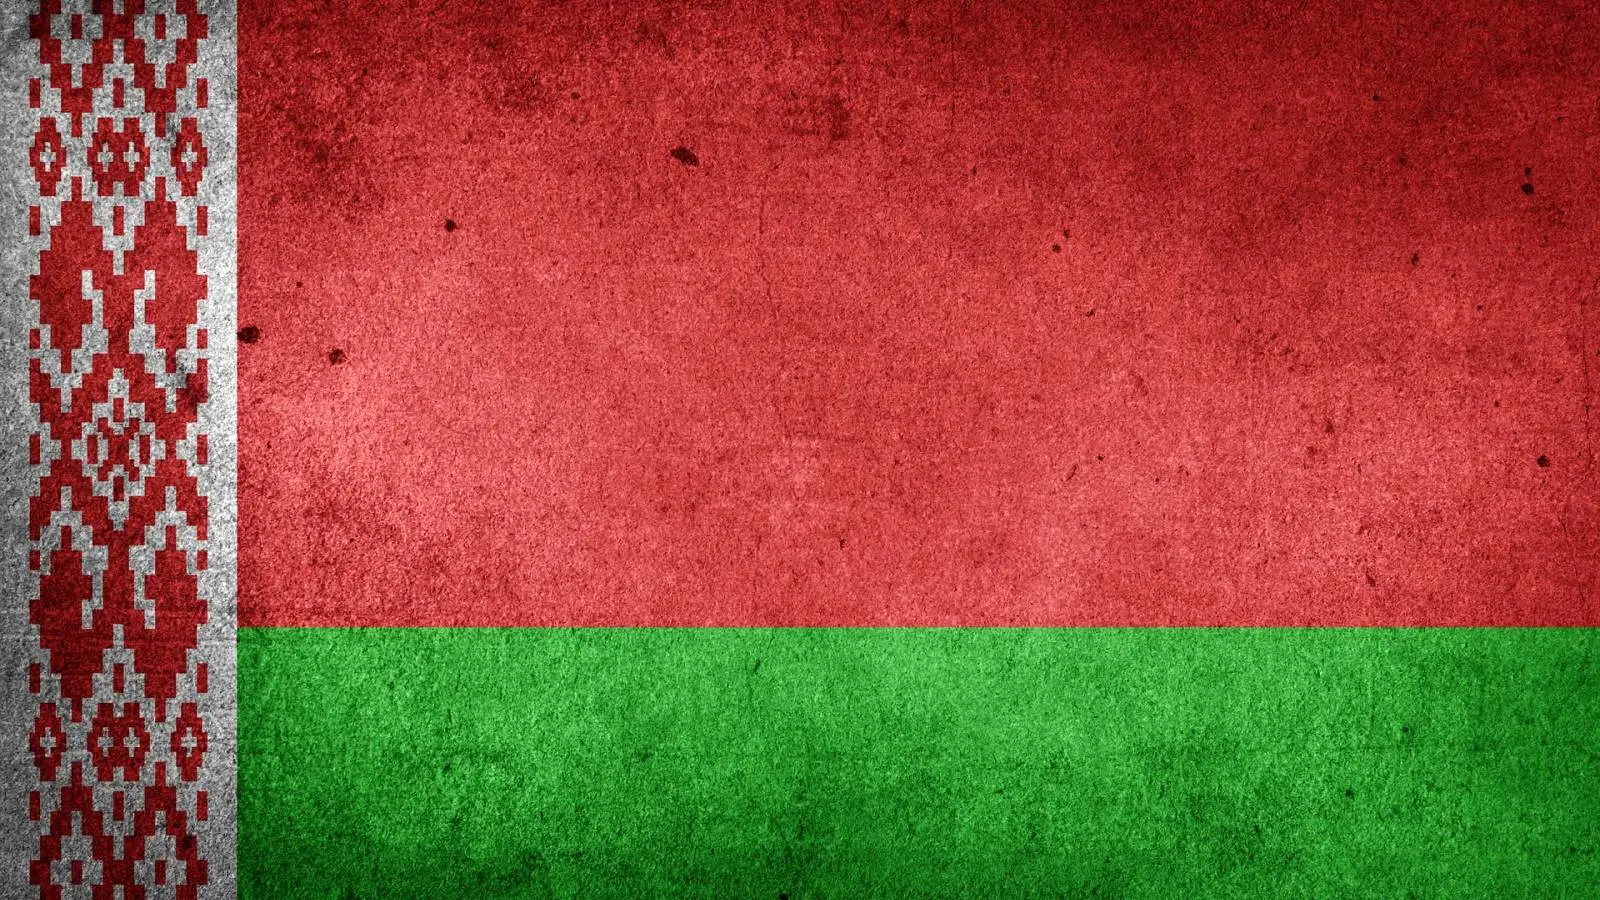 Wit-Rusland is niet van plan het leger te mobiliseren om Rusland in de oorlog te helpen